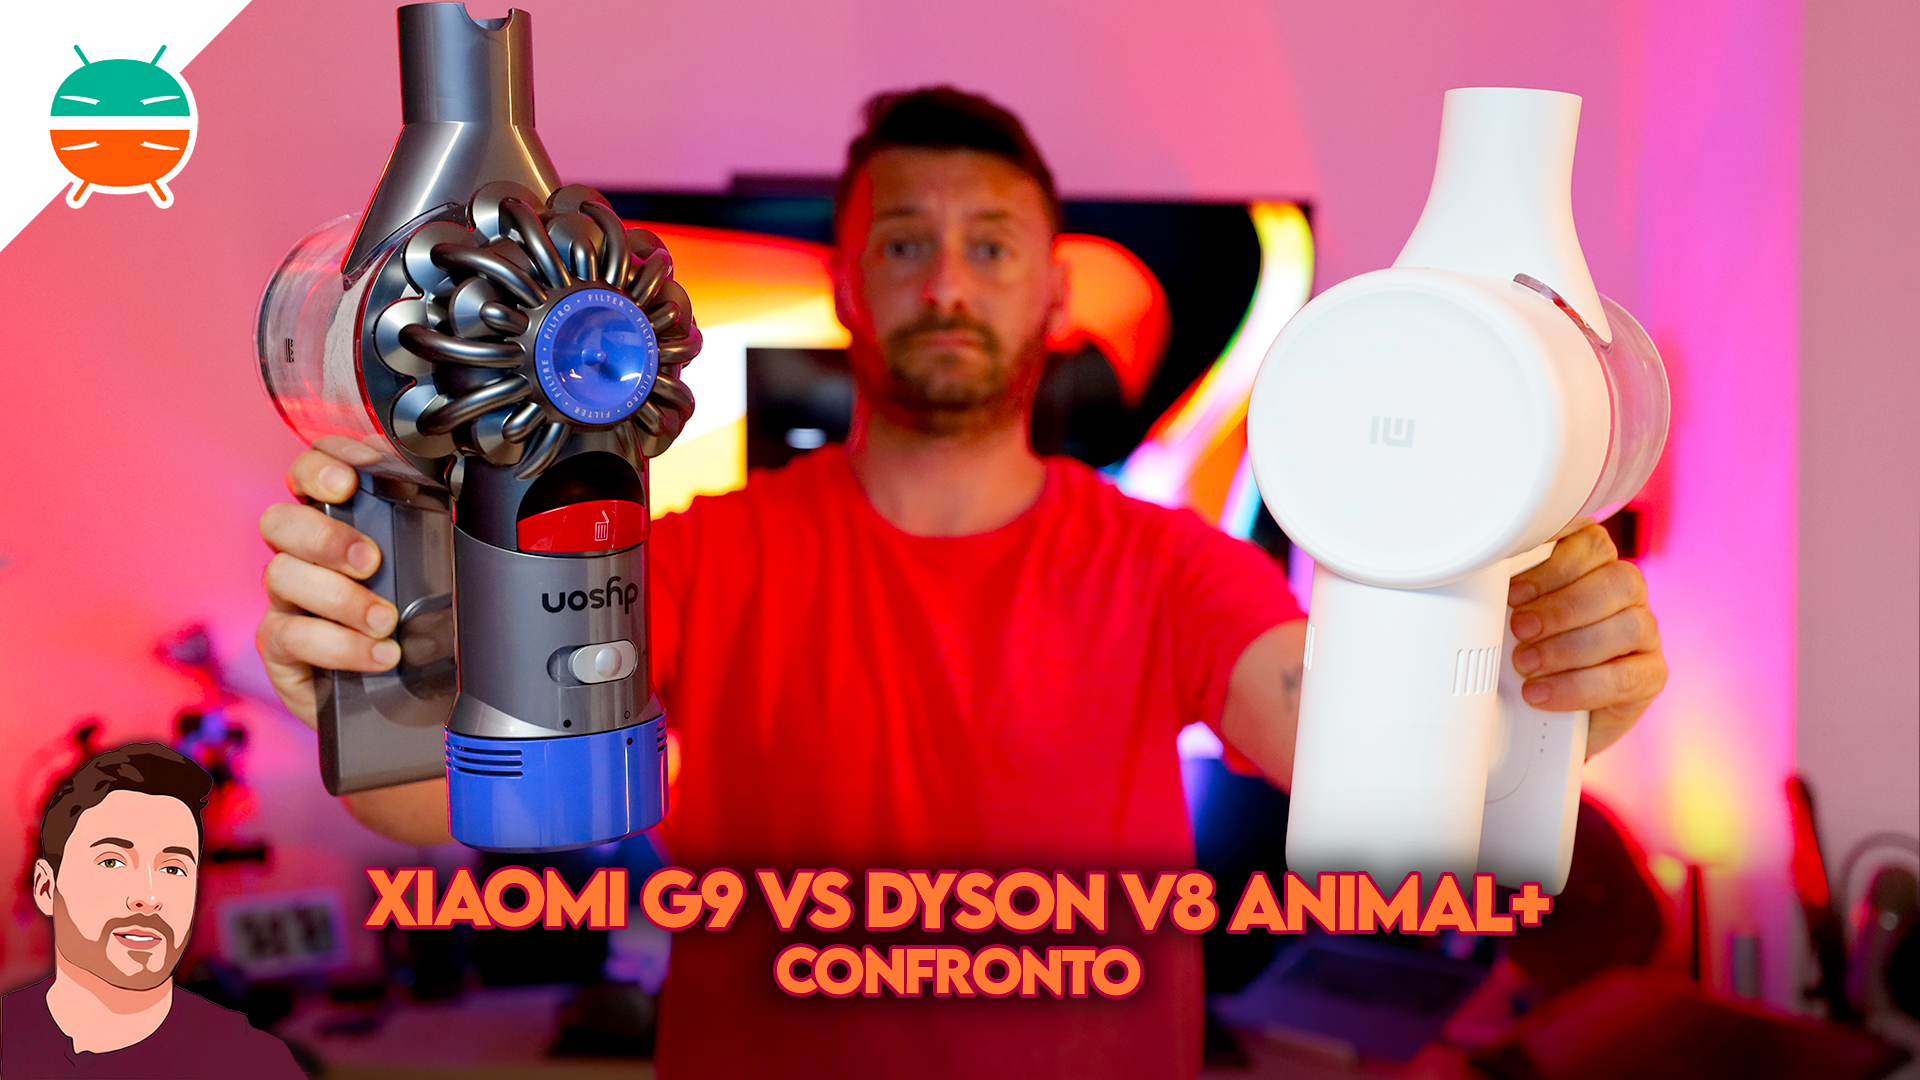 Confronto Xiaomi G9 Vs. Dyson V8 Animal+: vale la pena spendere di